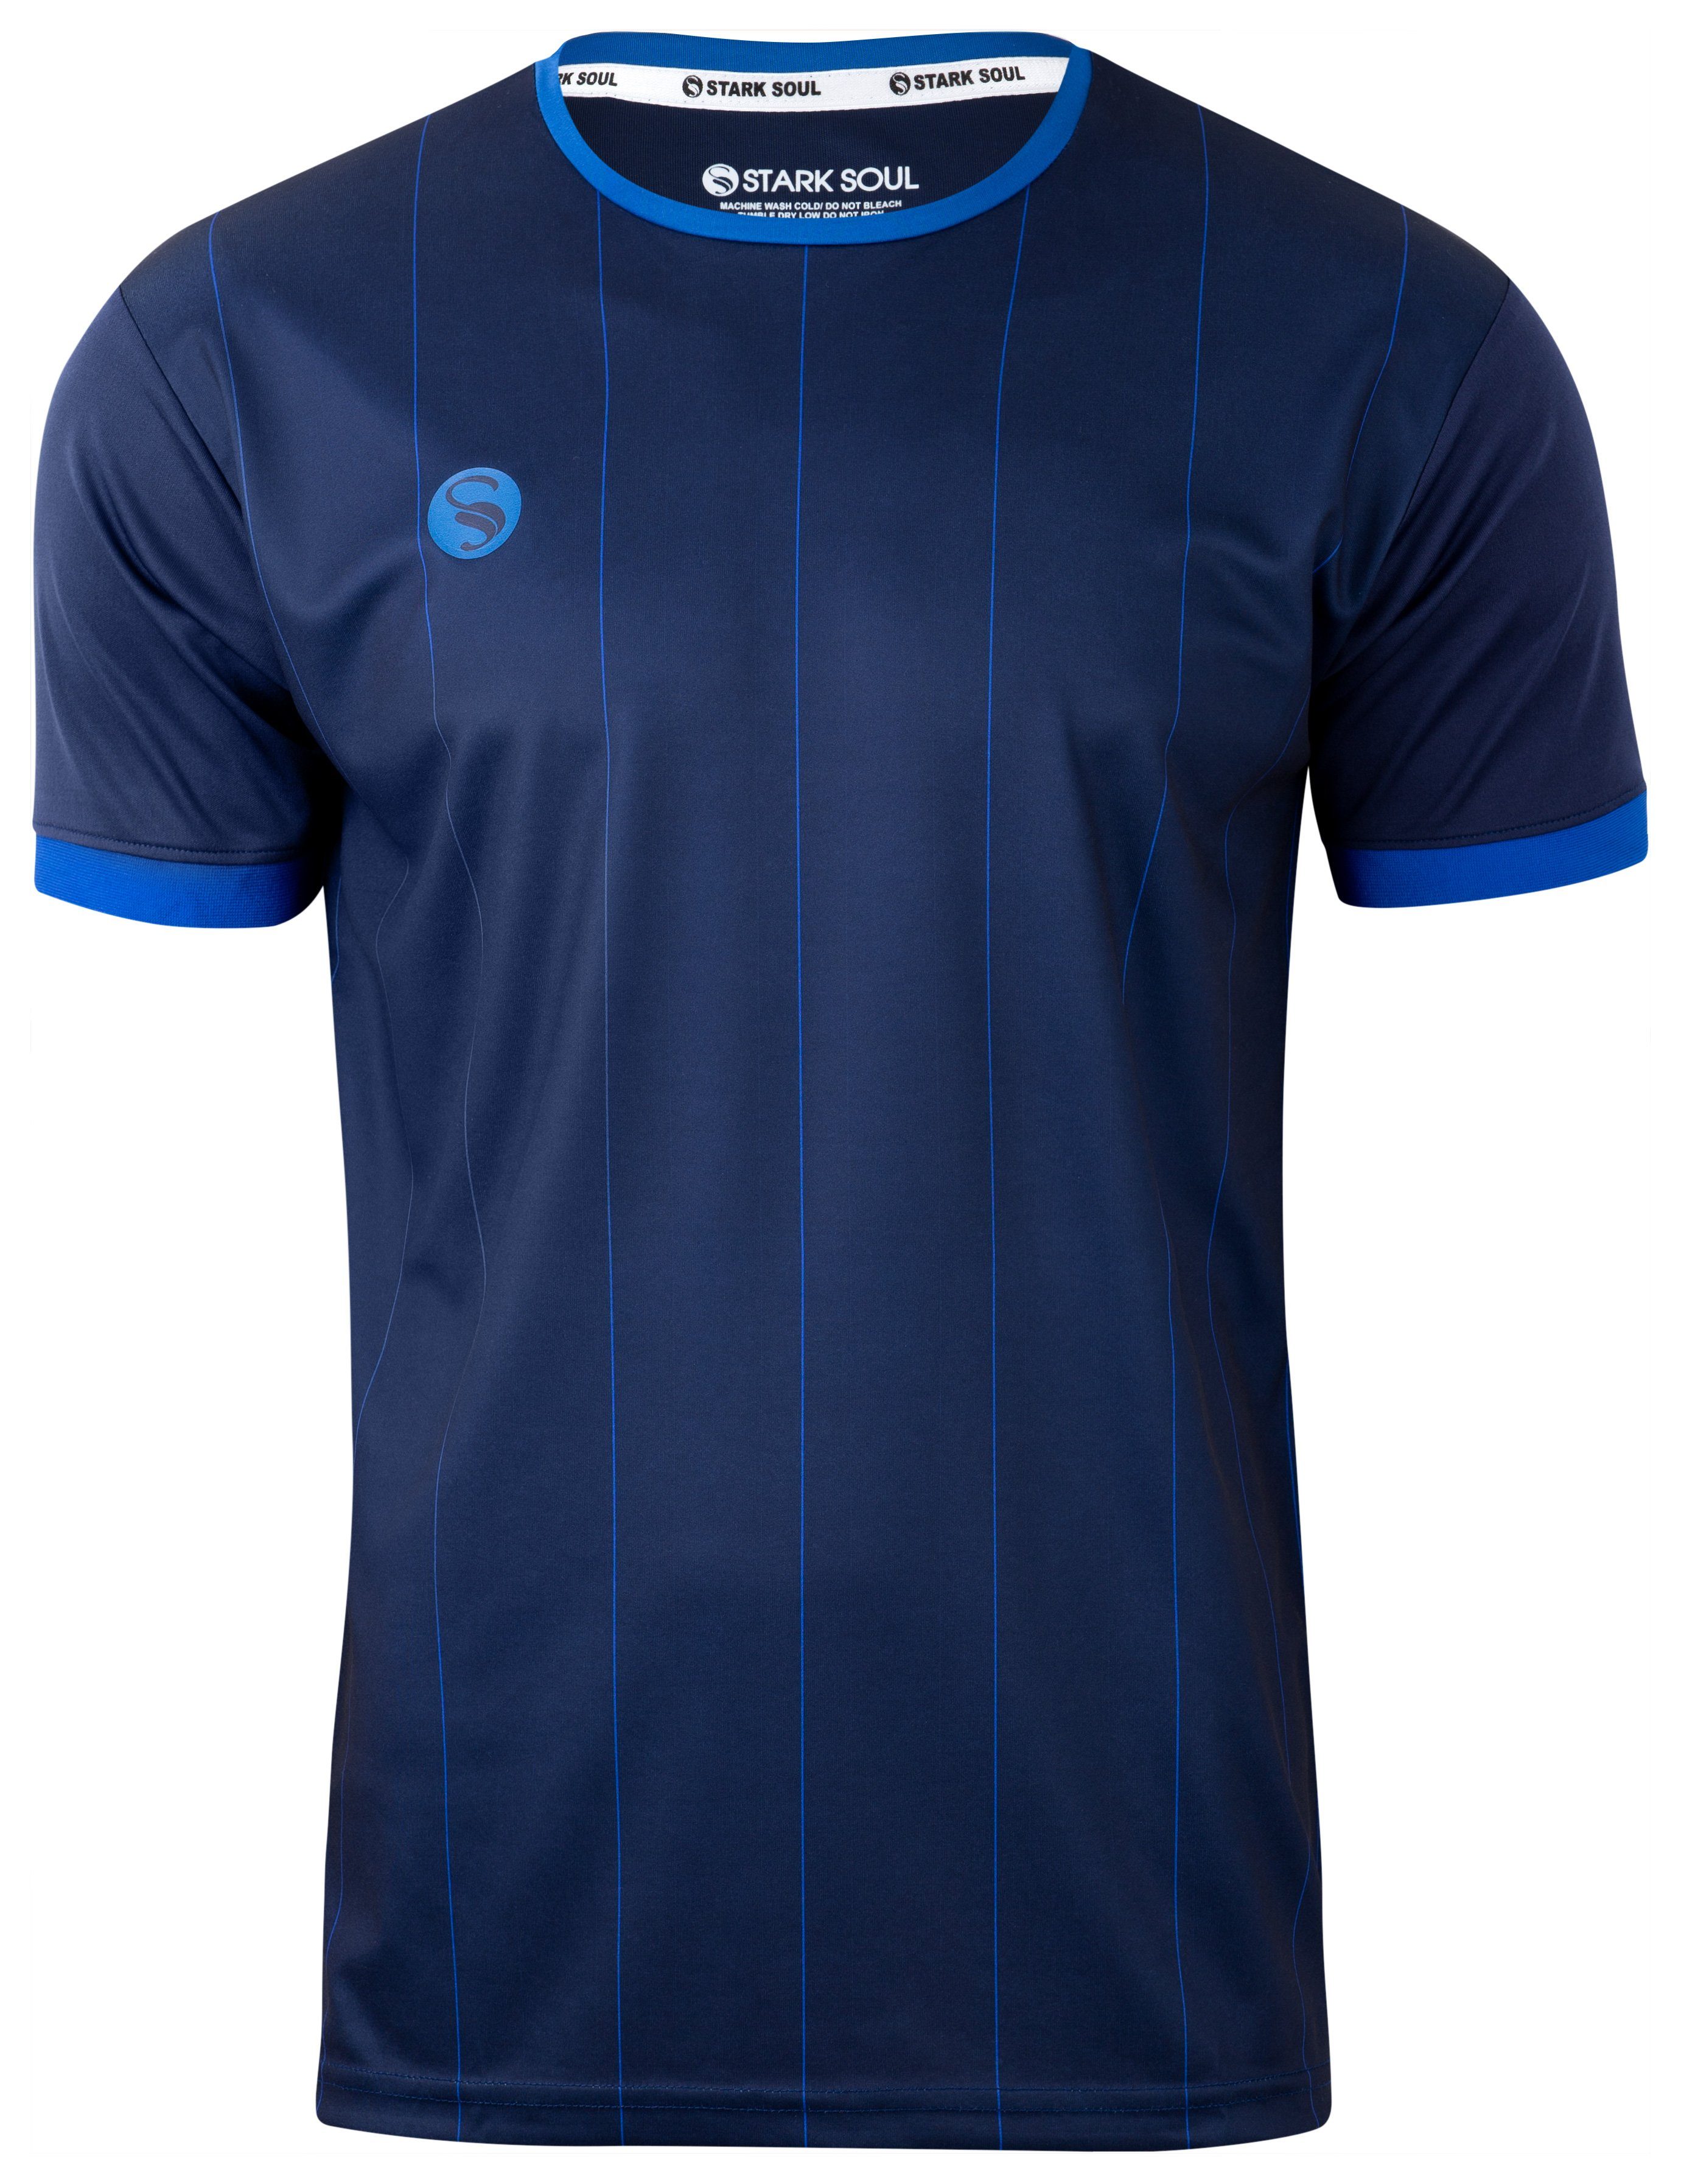 "Pinstripes", Herren Marineblau-Blau Trainingsshirt Sport-Shirt, Kurzarm Trikot Soul® Stark T-Shirt